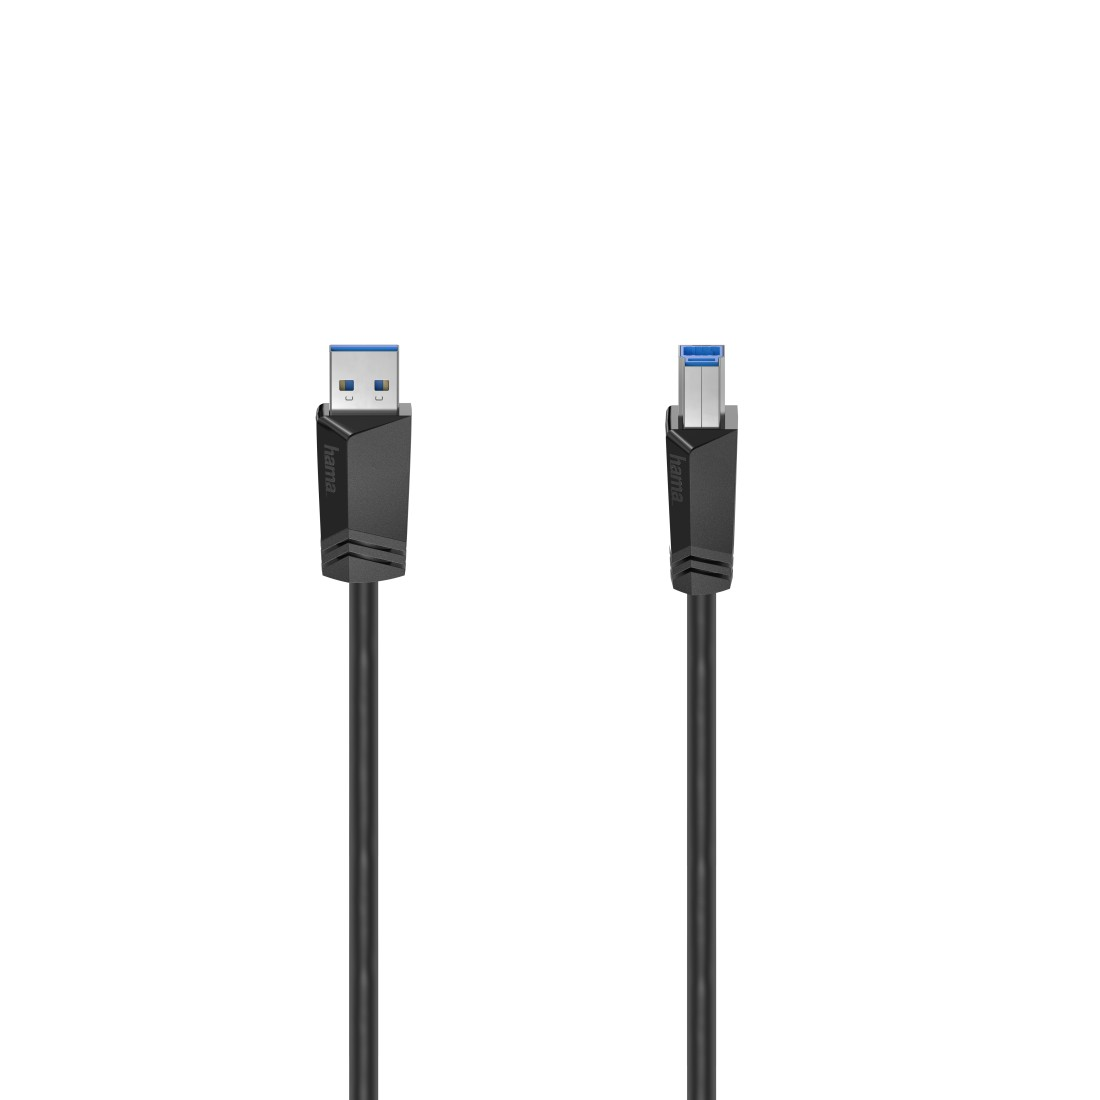 HAMA USB Kabel, 1,5 m 3.0